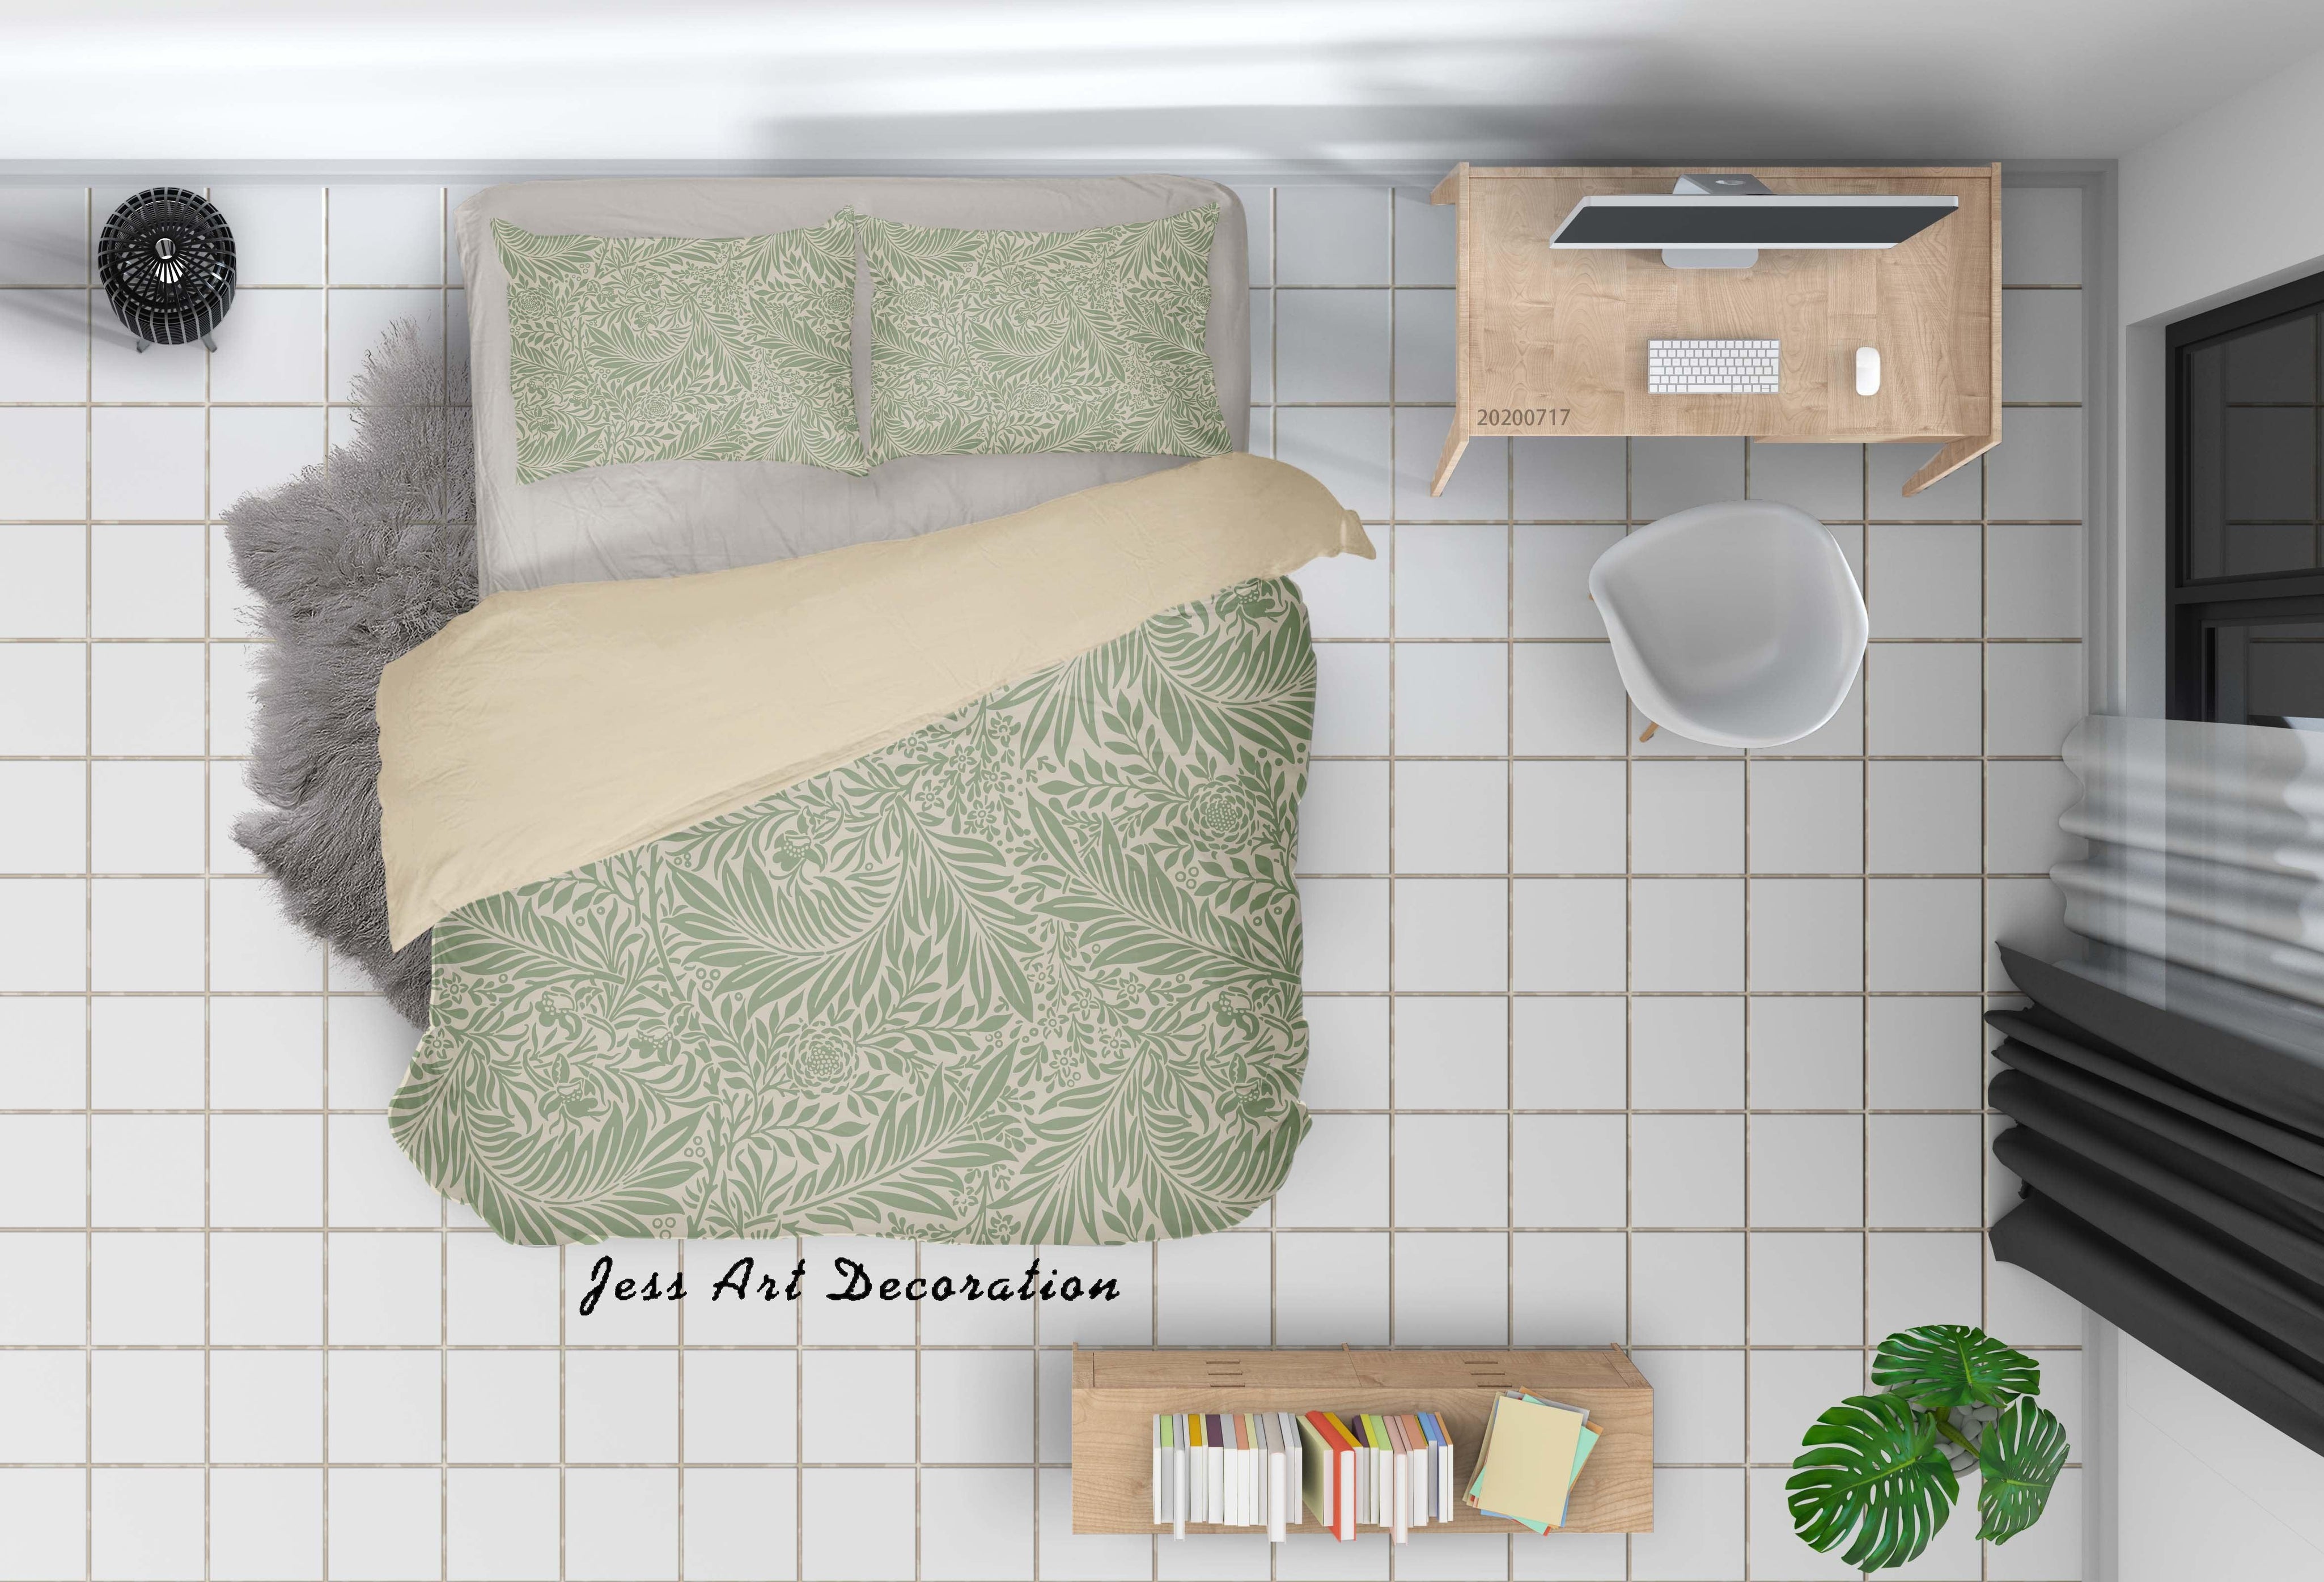 3D Vintage Floral Quilt Cover Set Bedding Set Duvet Cover Pillowcases WJ 1606- Jess Art Decoration